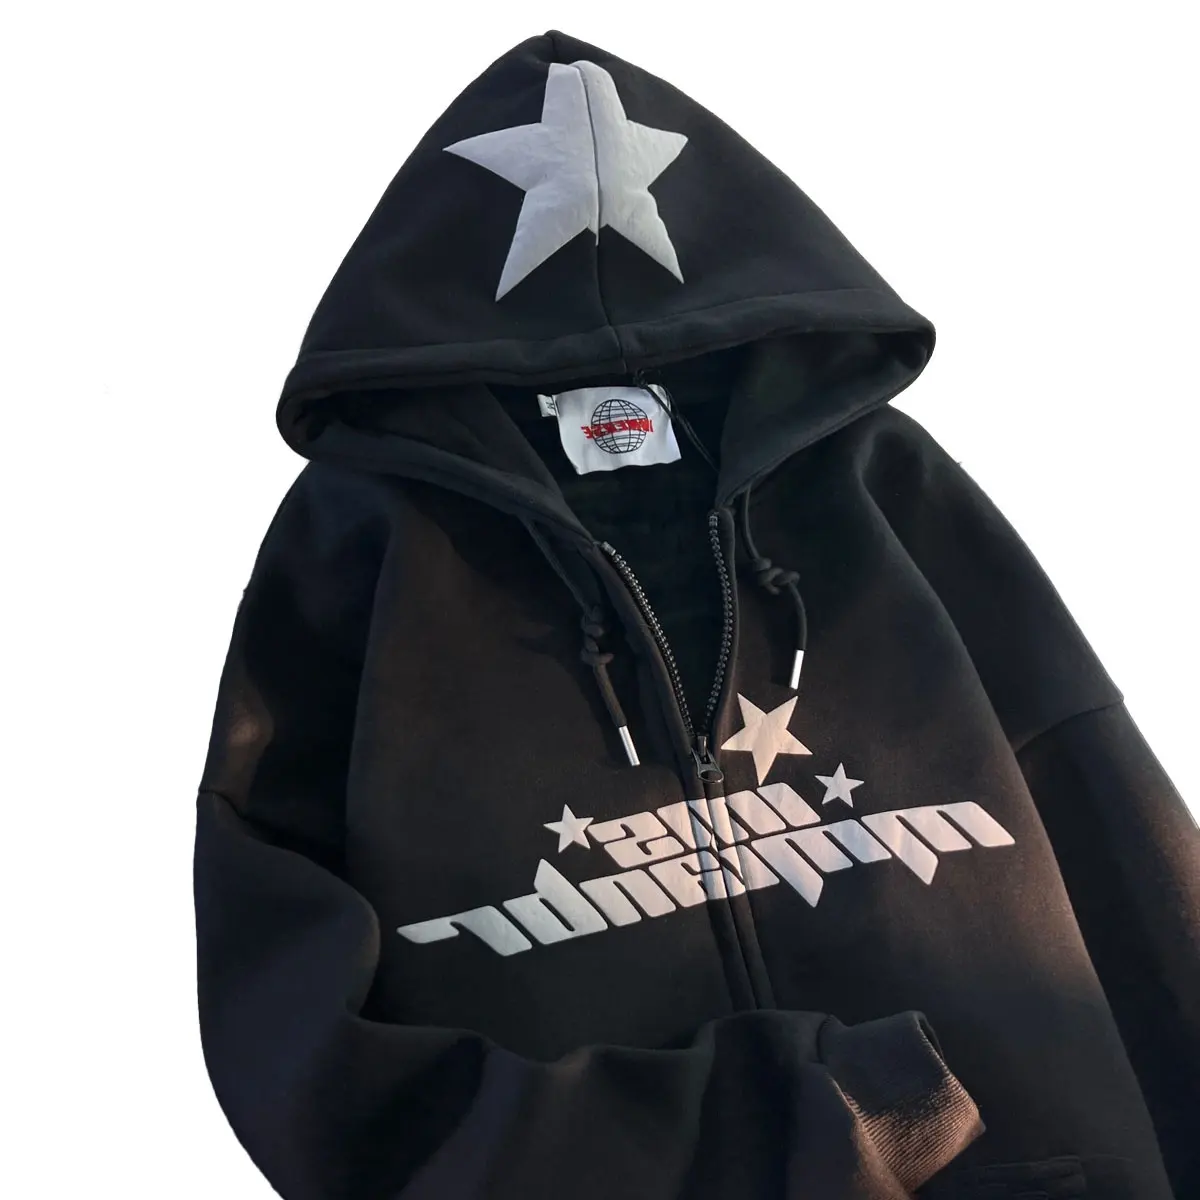 Oem alta qualidade personalizado zip zipper hoodie fabricante mens 100% algodão boxy zip hoodie sopro impressão em branco zip up hoodies